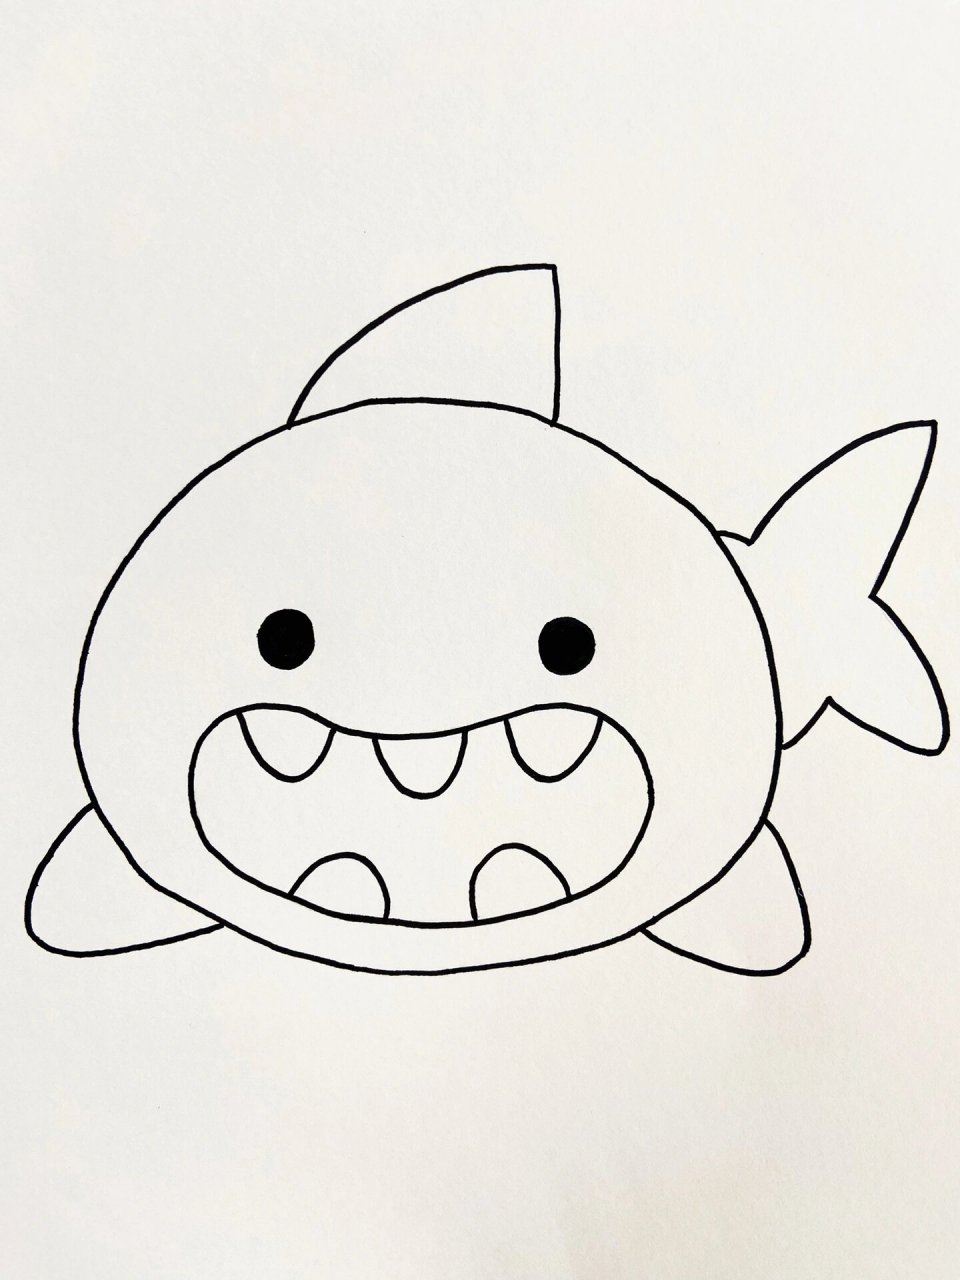 鲨鱼宝宝简画图片